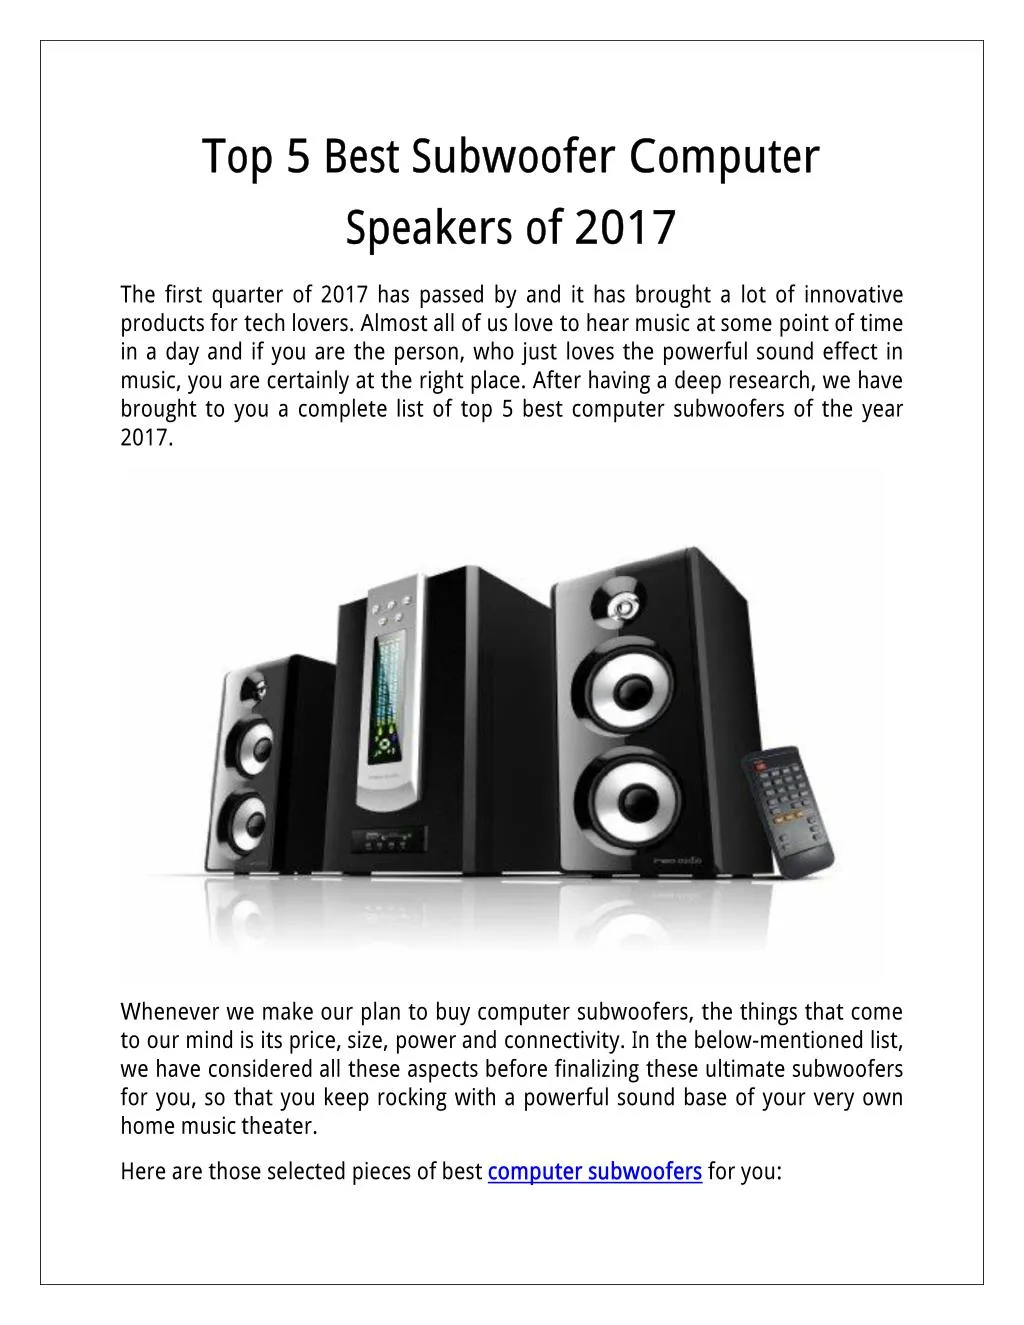 top5 best subwoofer computer speakersof 2017